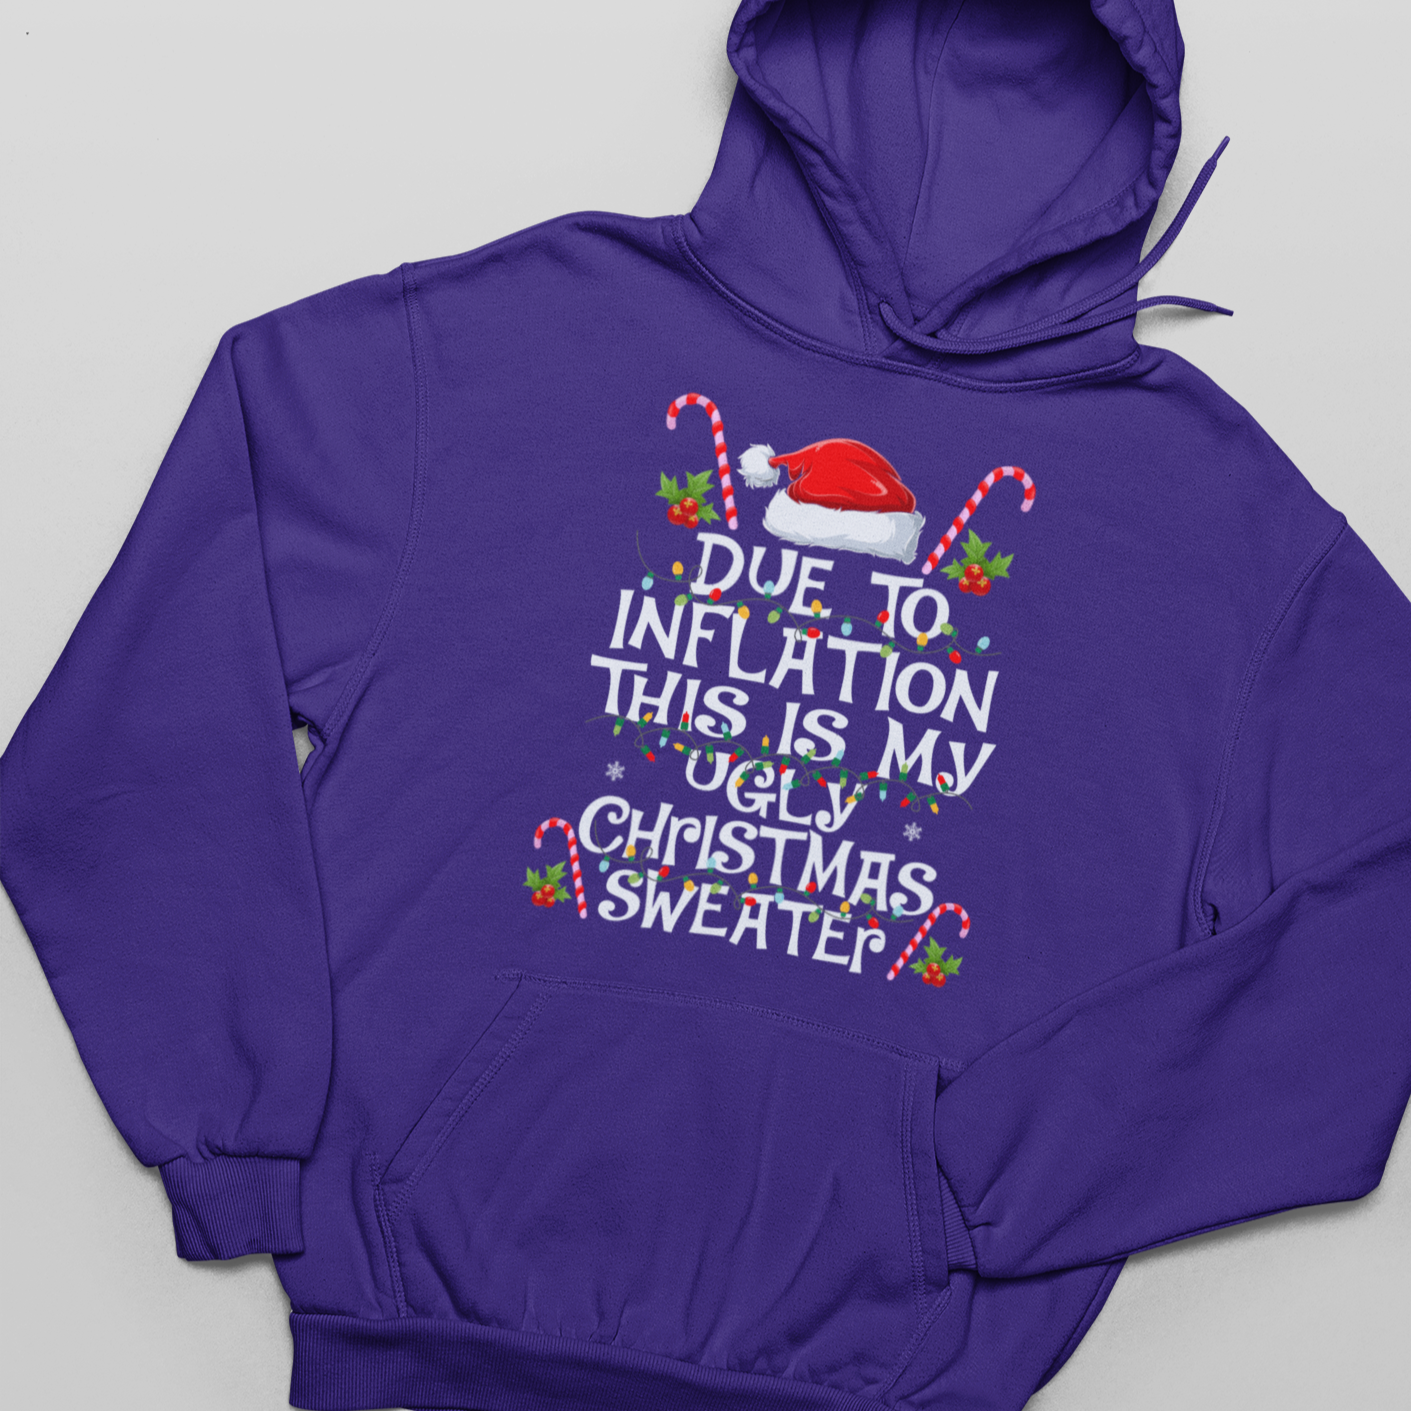 Debido a la inflación, este es mi suéter navideño - Sudadera con capucha unisex